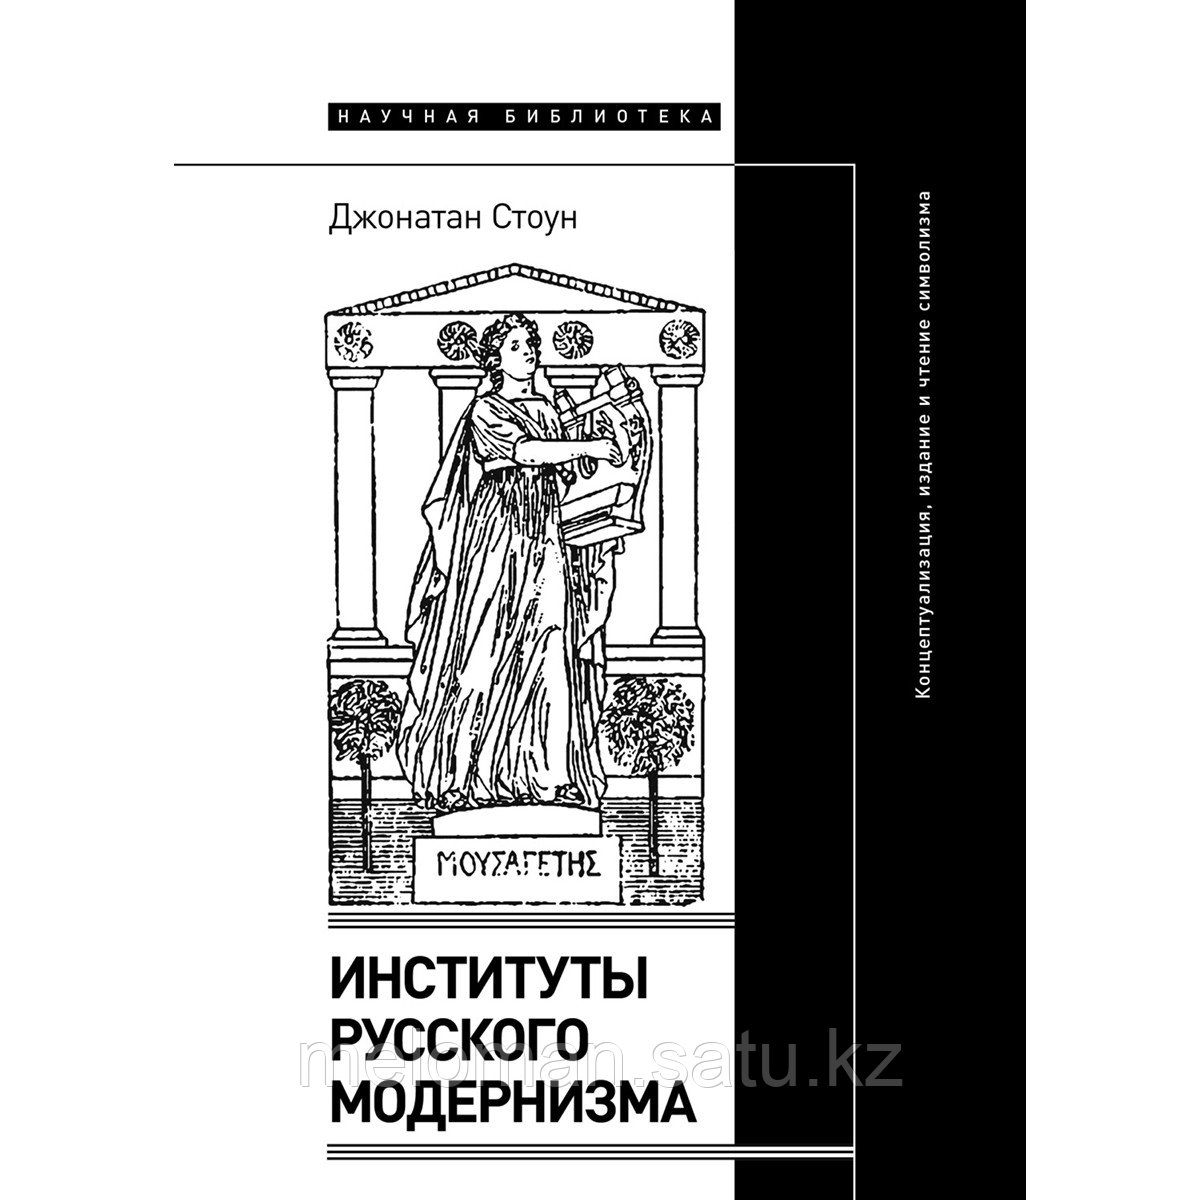 Стоун Джонатан: Институты русского модернизма: концептуализация, издание и чтение символизма